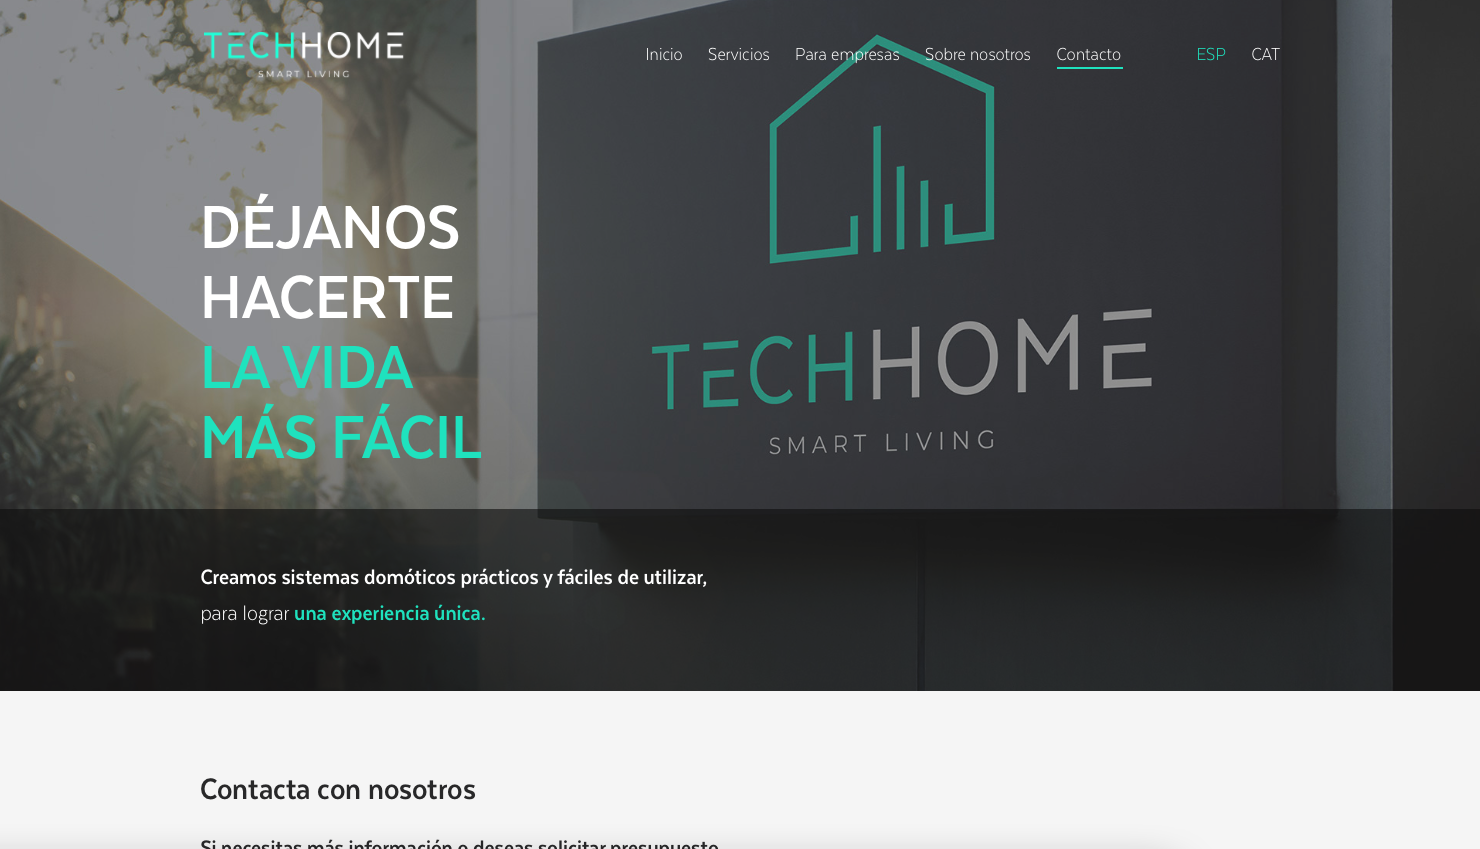 Diseño web hogares inteligentes: Techhome